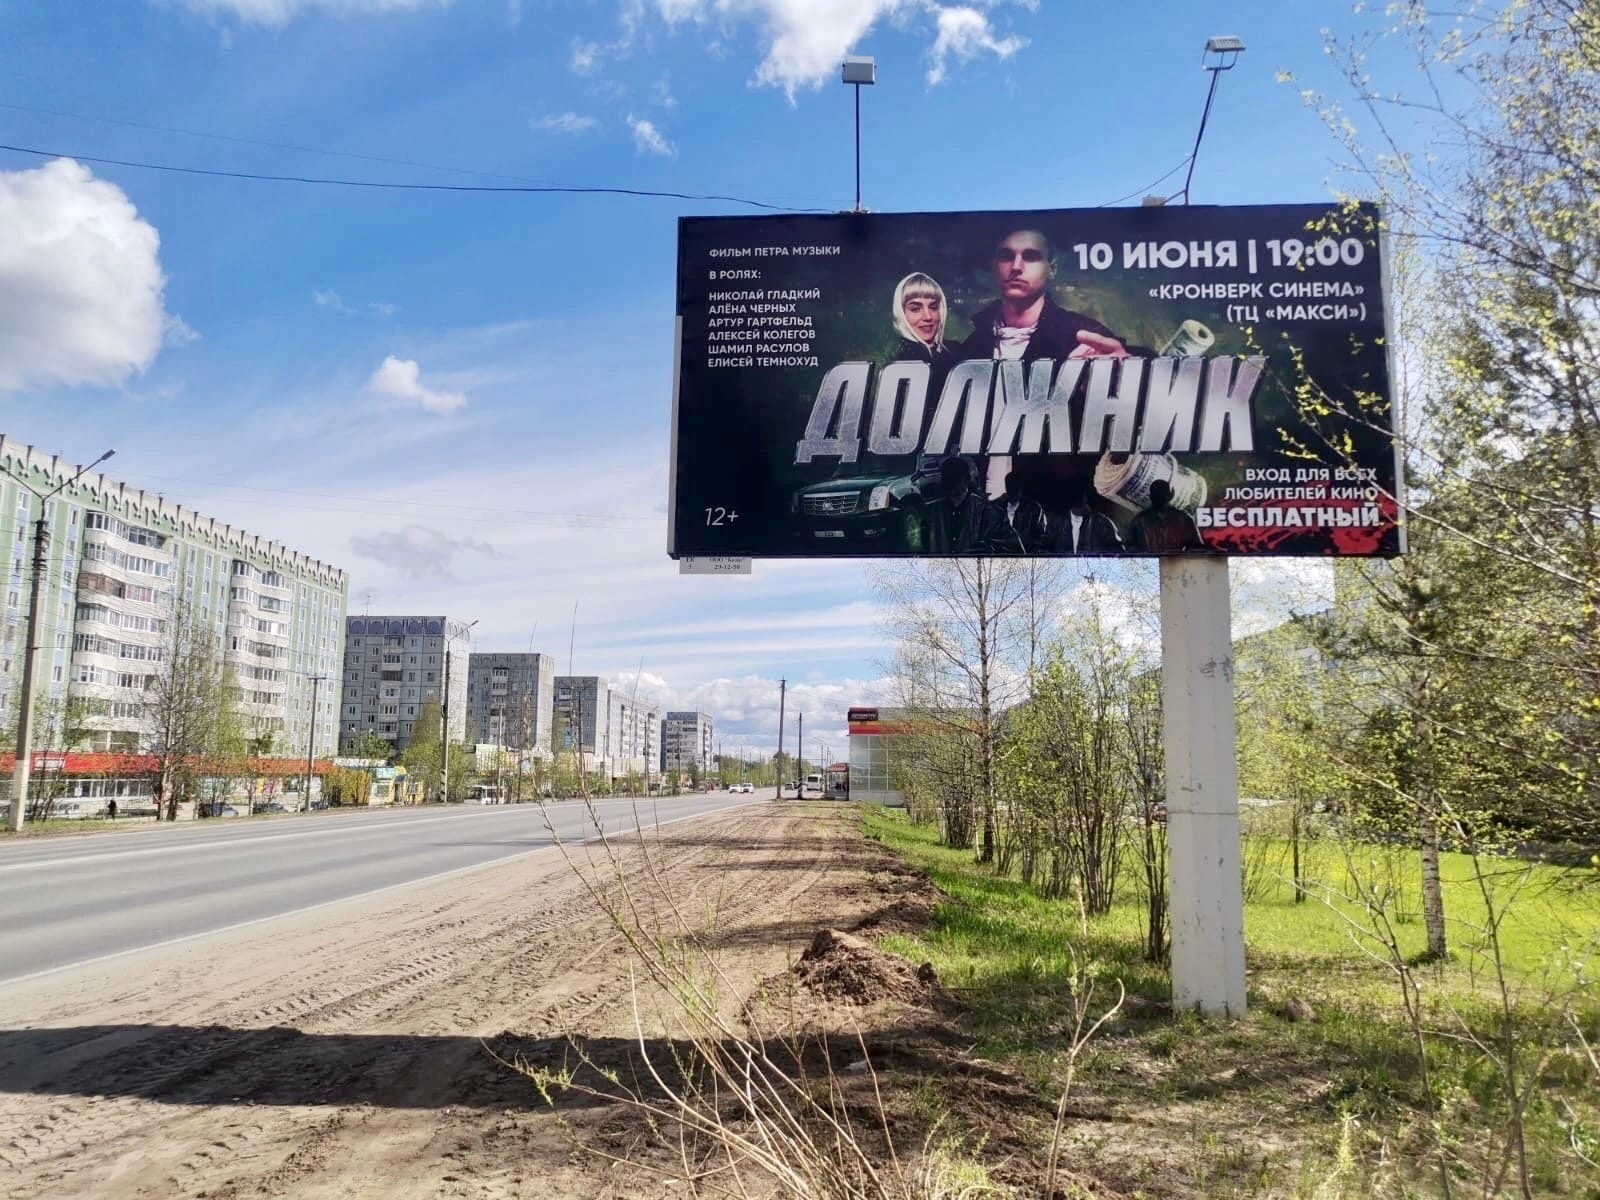 Сыктывкарский режиссер пробился на большой экран и его фильм покажут в кино